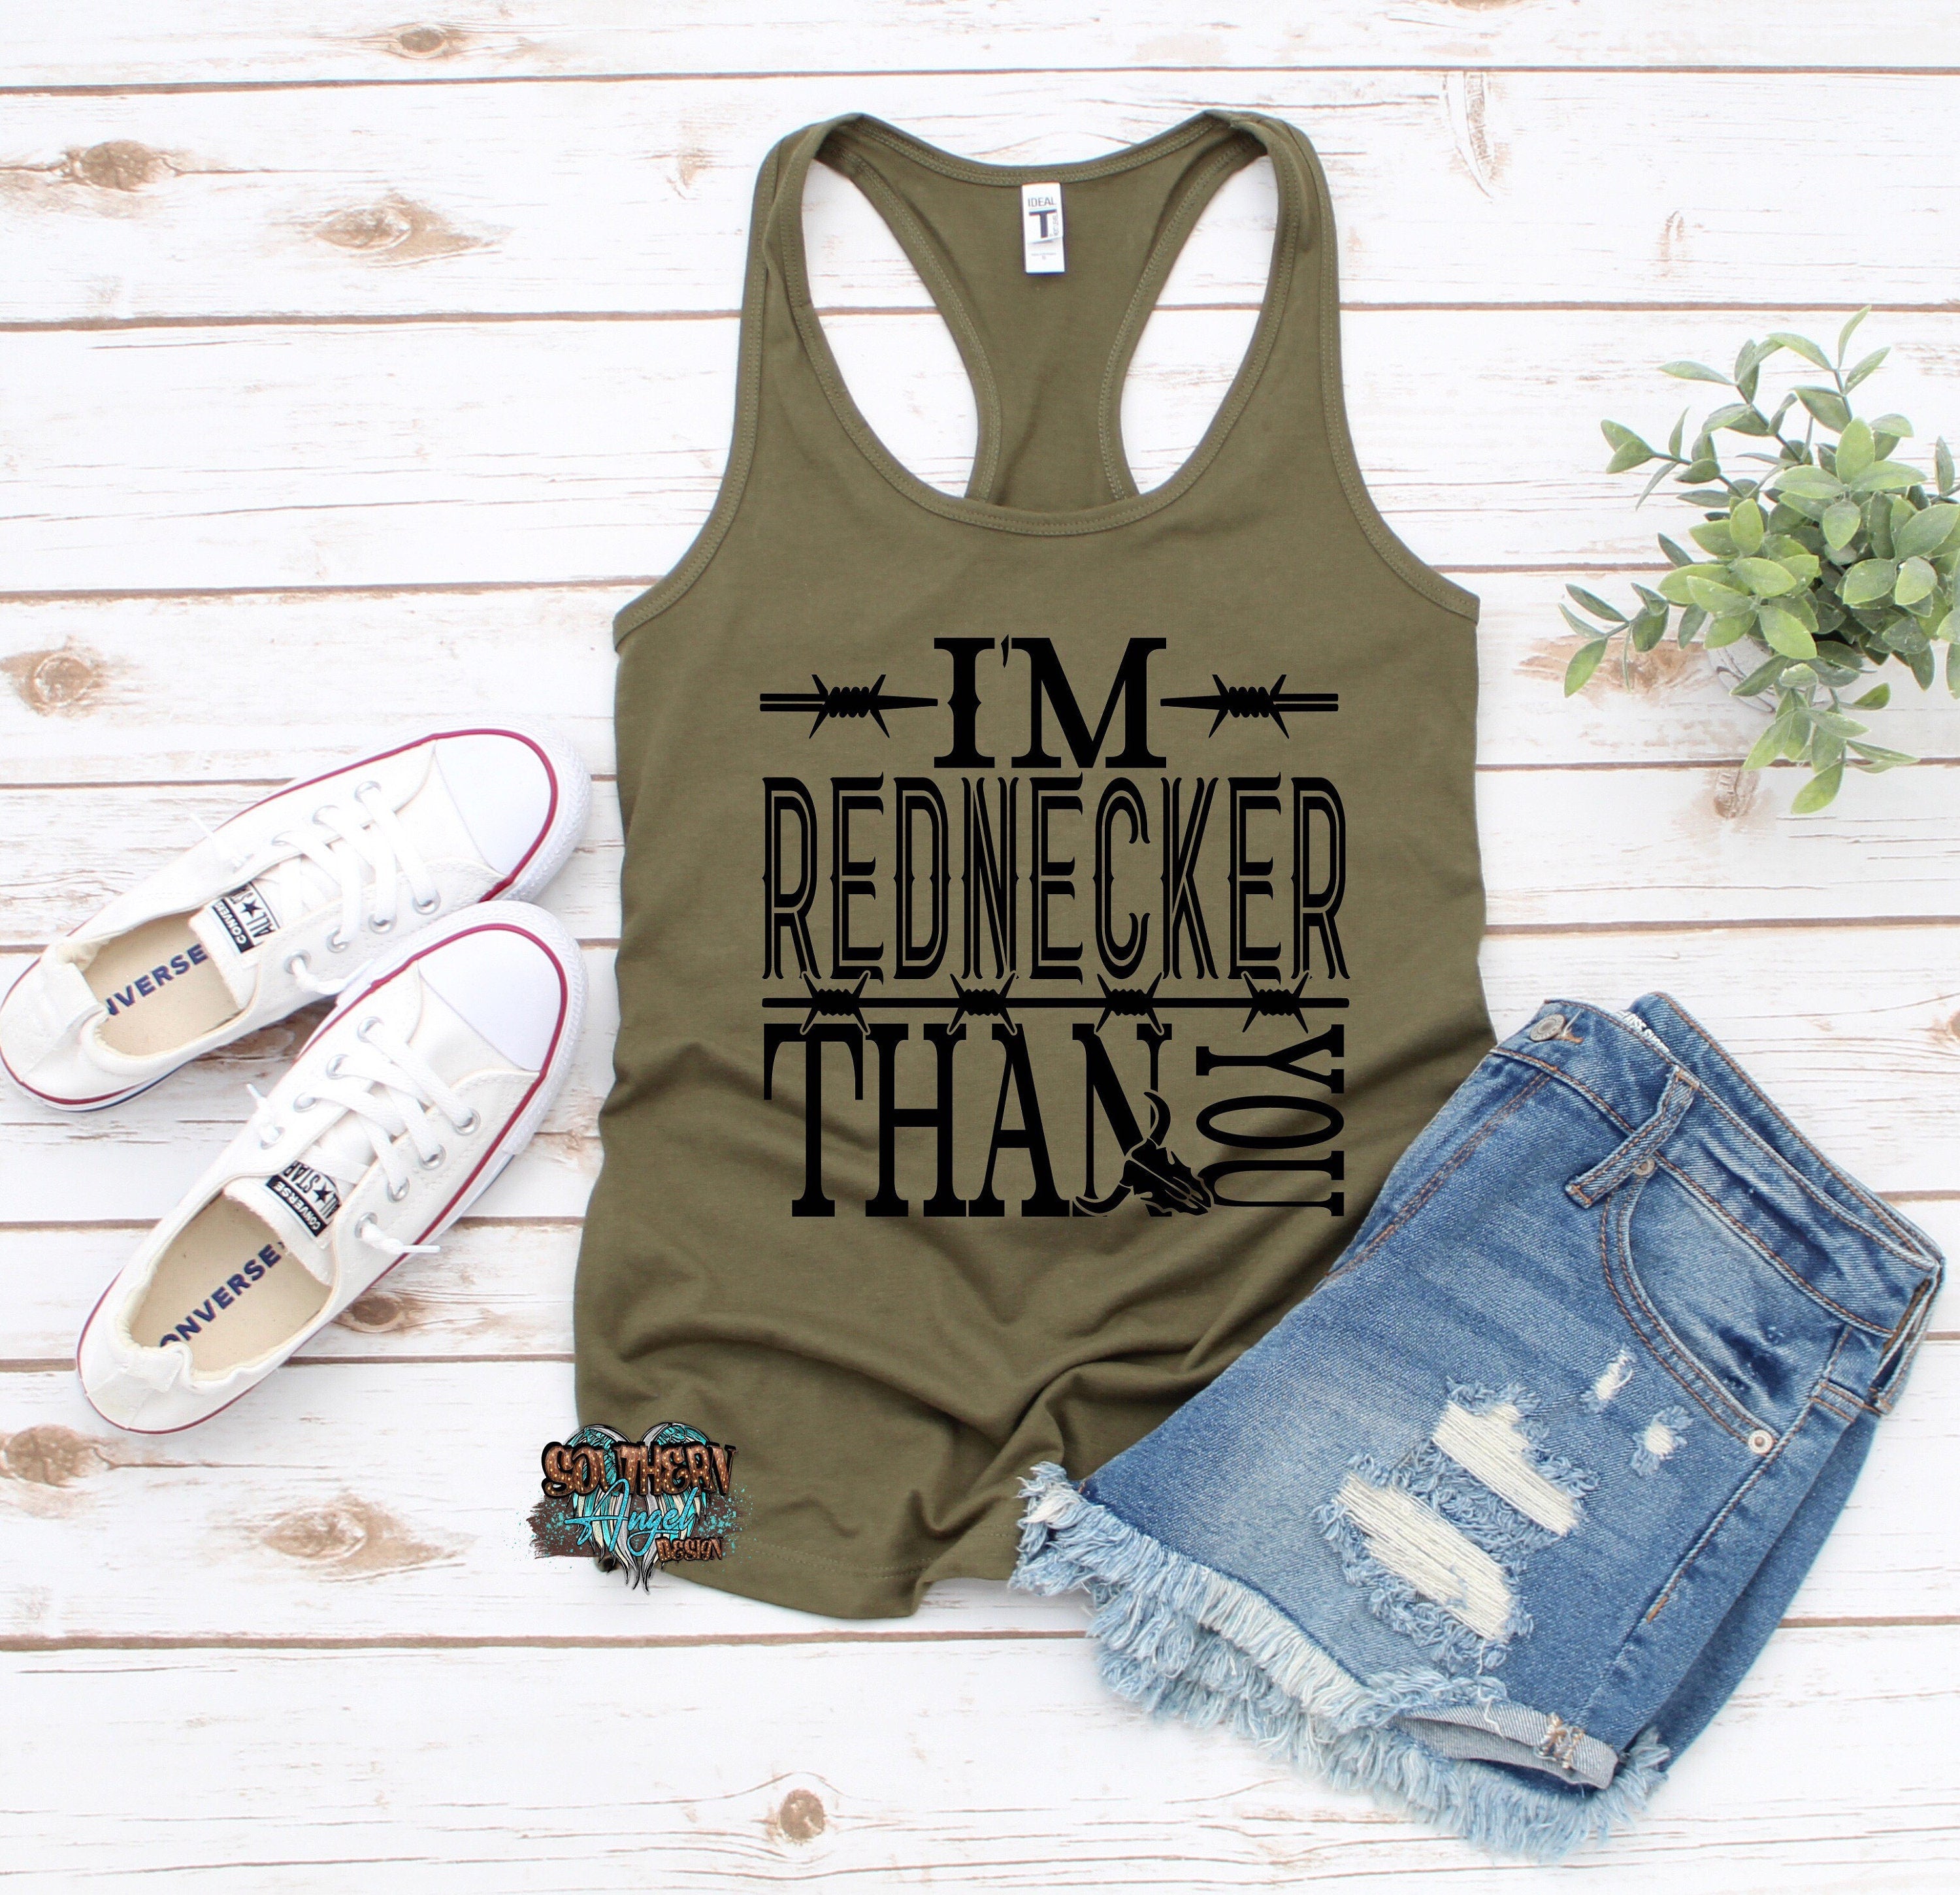 I’m Rednecker than you tank